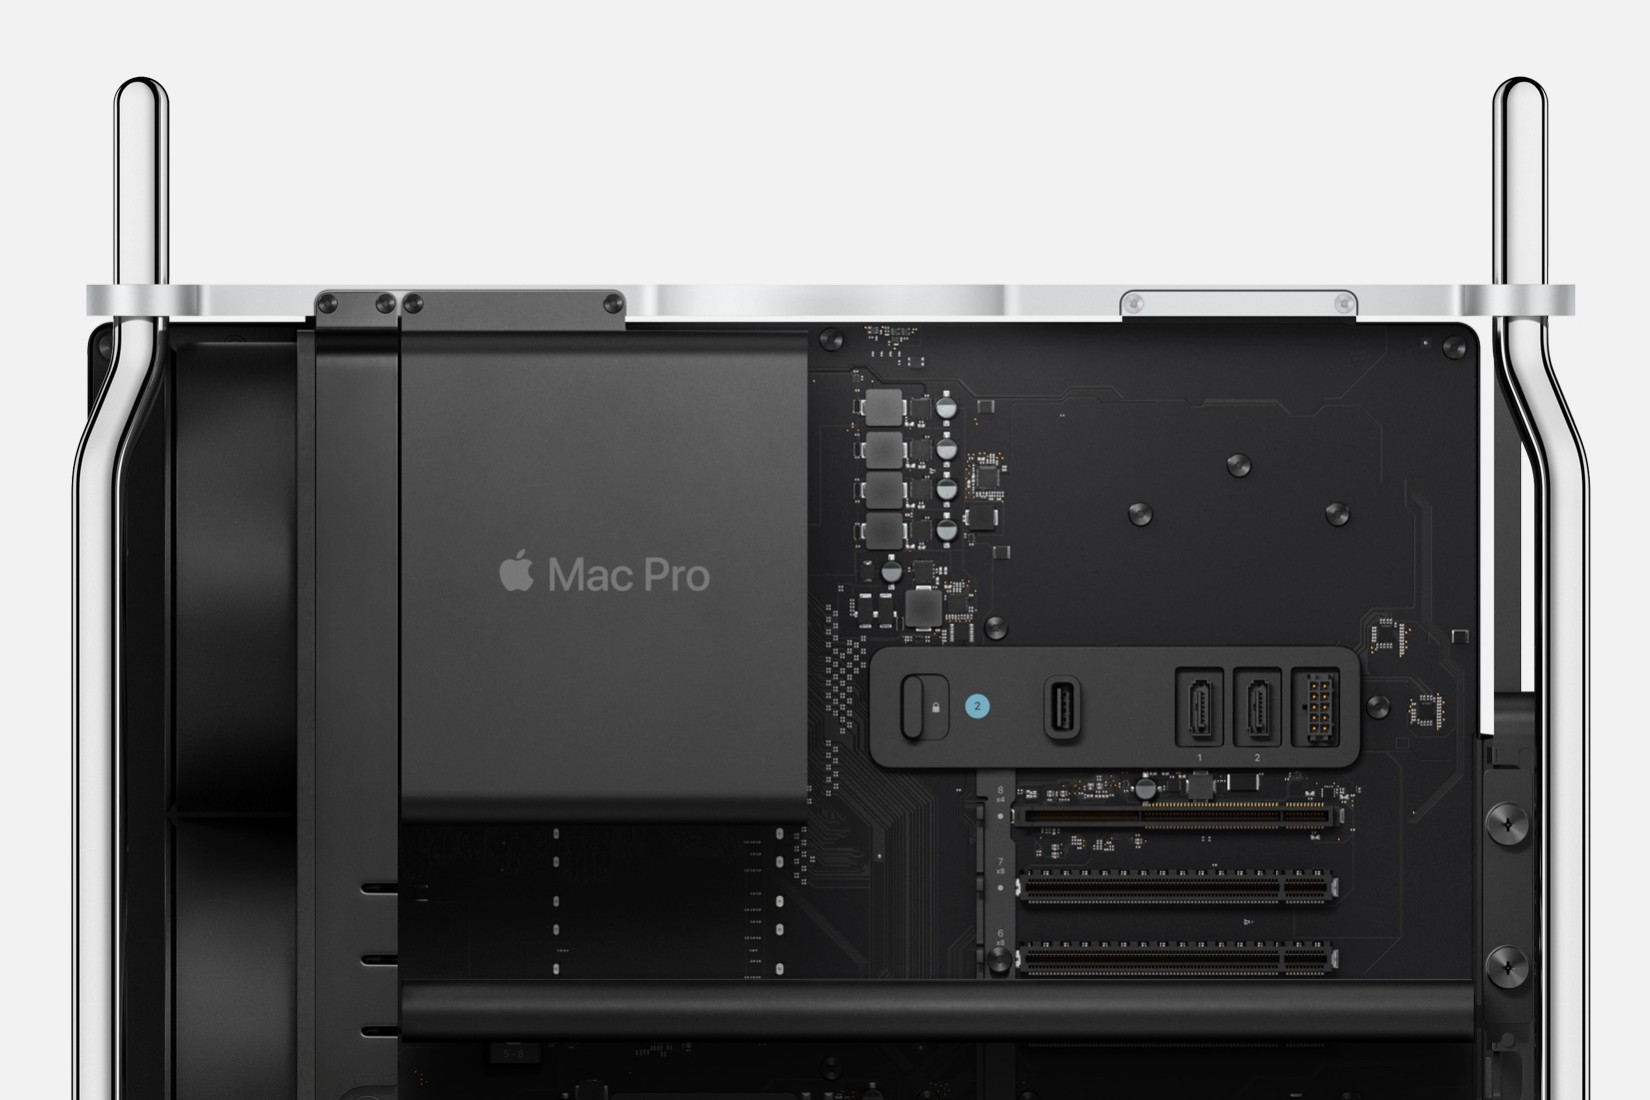 El interior de la Mac Pro de Apple, mostrando su placa base y algunas ranuras de conectividad.